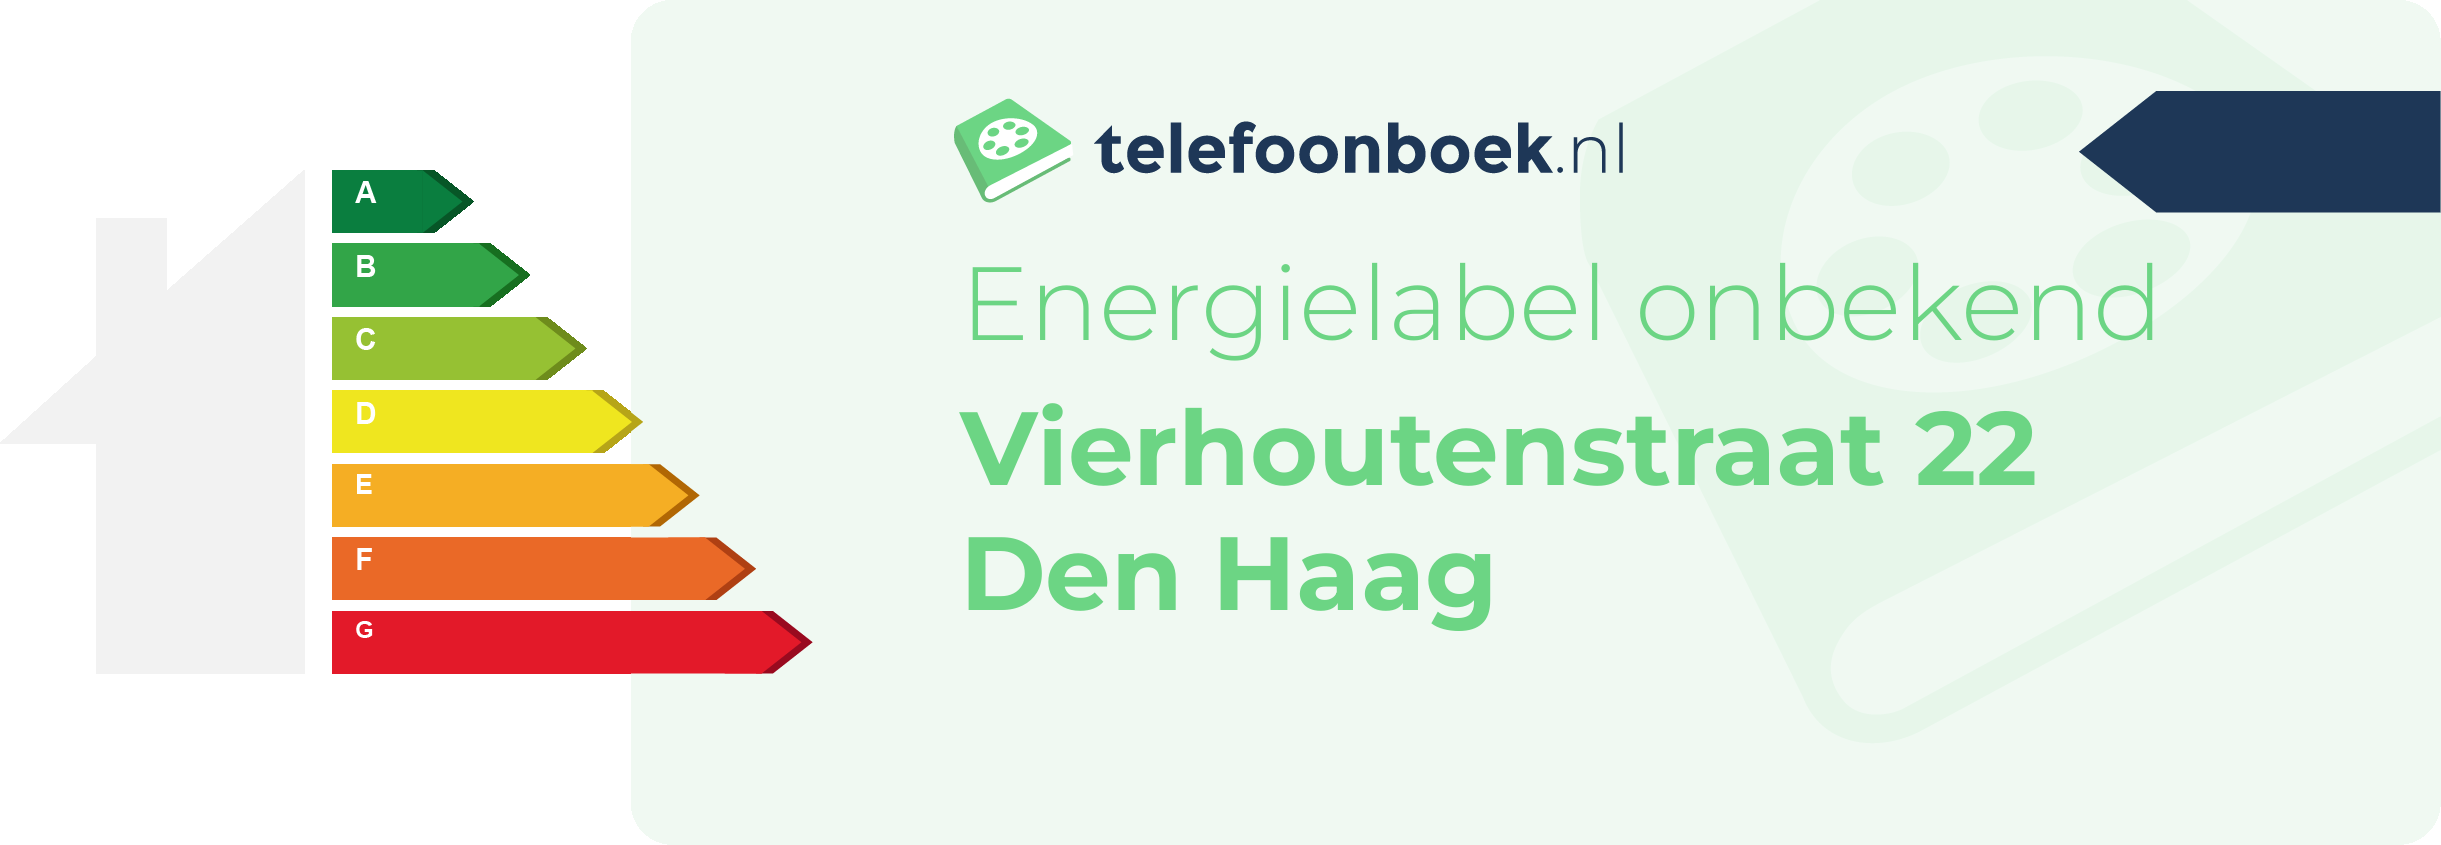 Energielabel Vierhoutenstraat 22 Den Haag